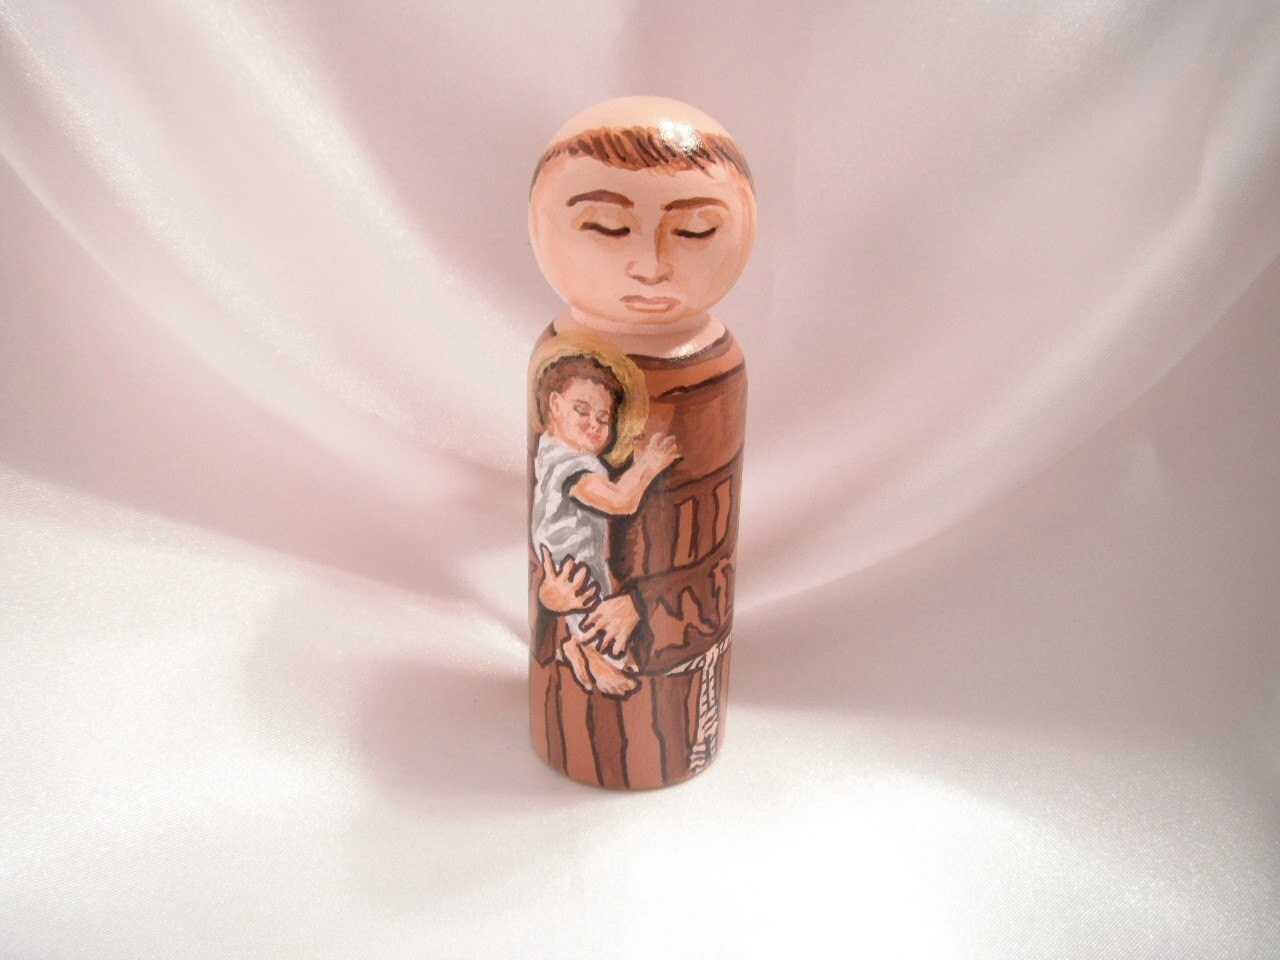 Catholic Saint Figure Peg Doll Toy Gift - St. Anthony of Padua - made to  order